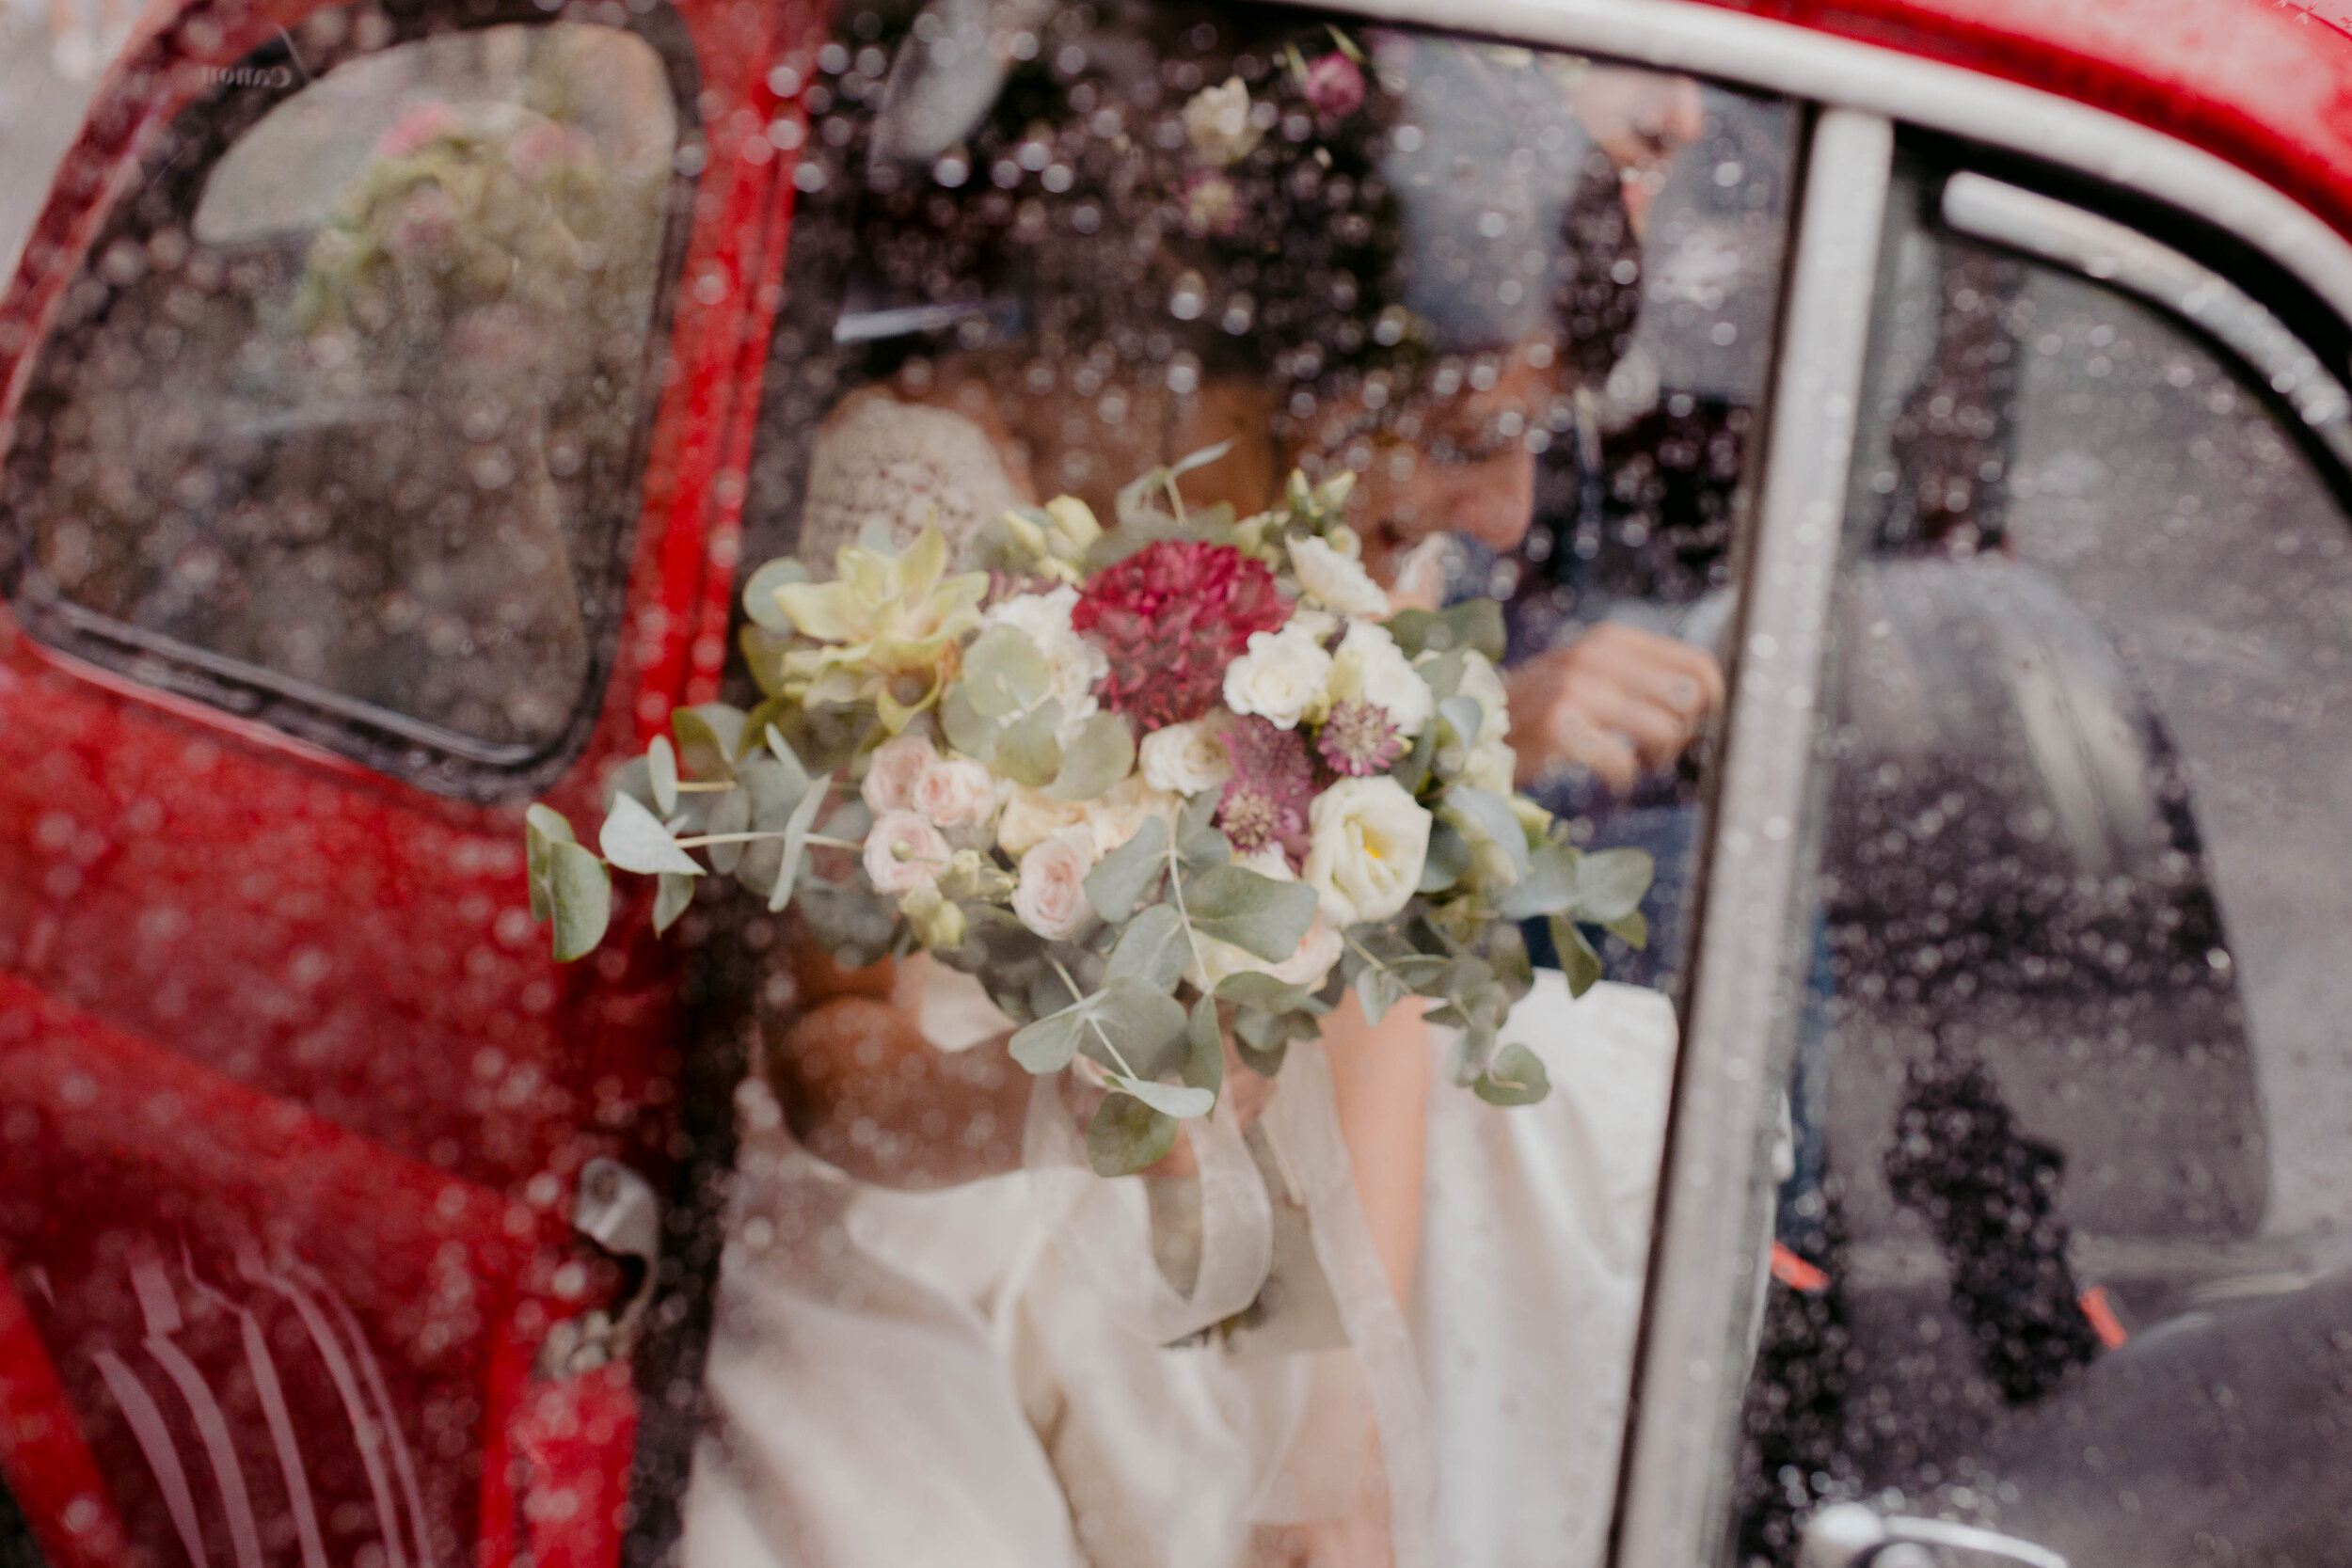 055 - Matrimonio in provincia di Cuneo - Miriam Callegari Fotografa.JPG